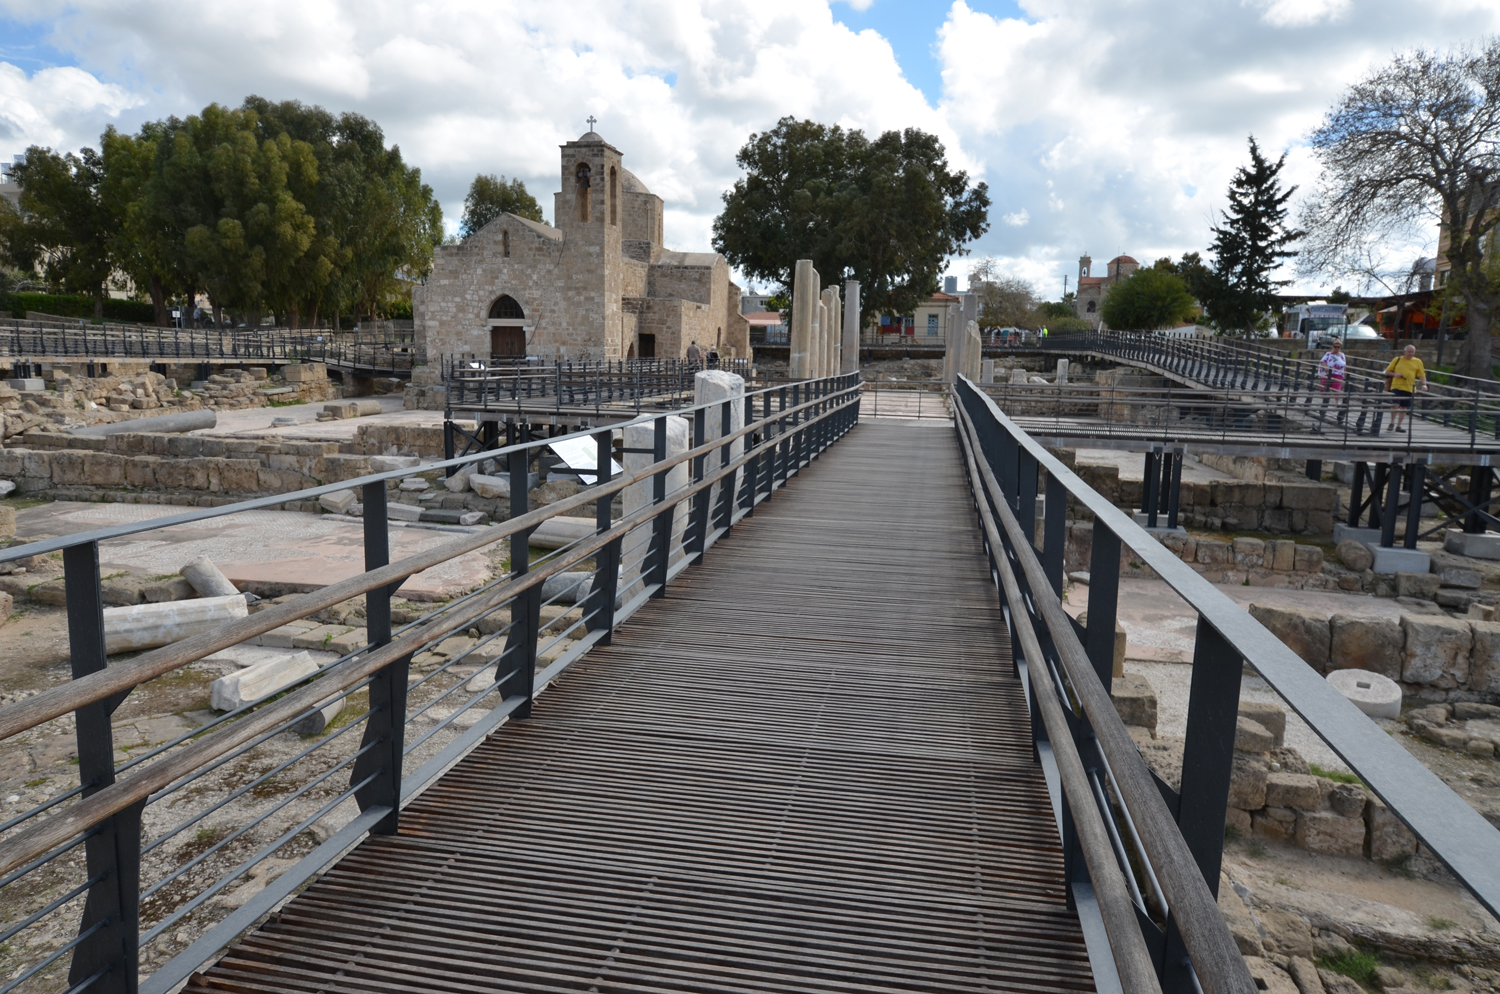  Nea Pafos: The Basilica of Chrysopolitissa